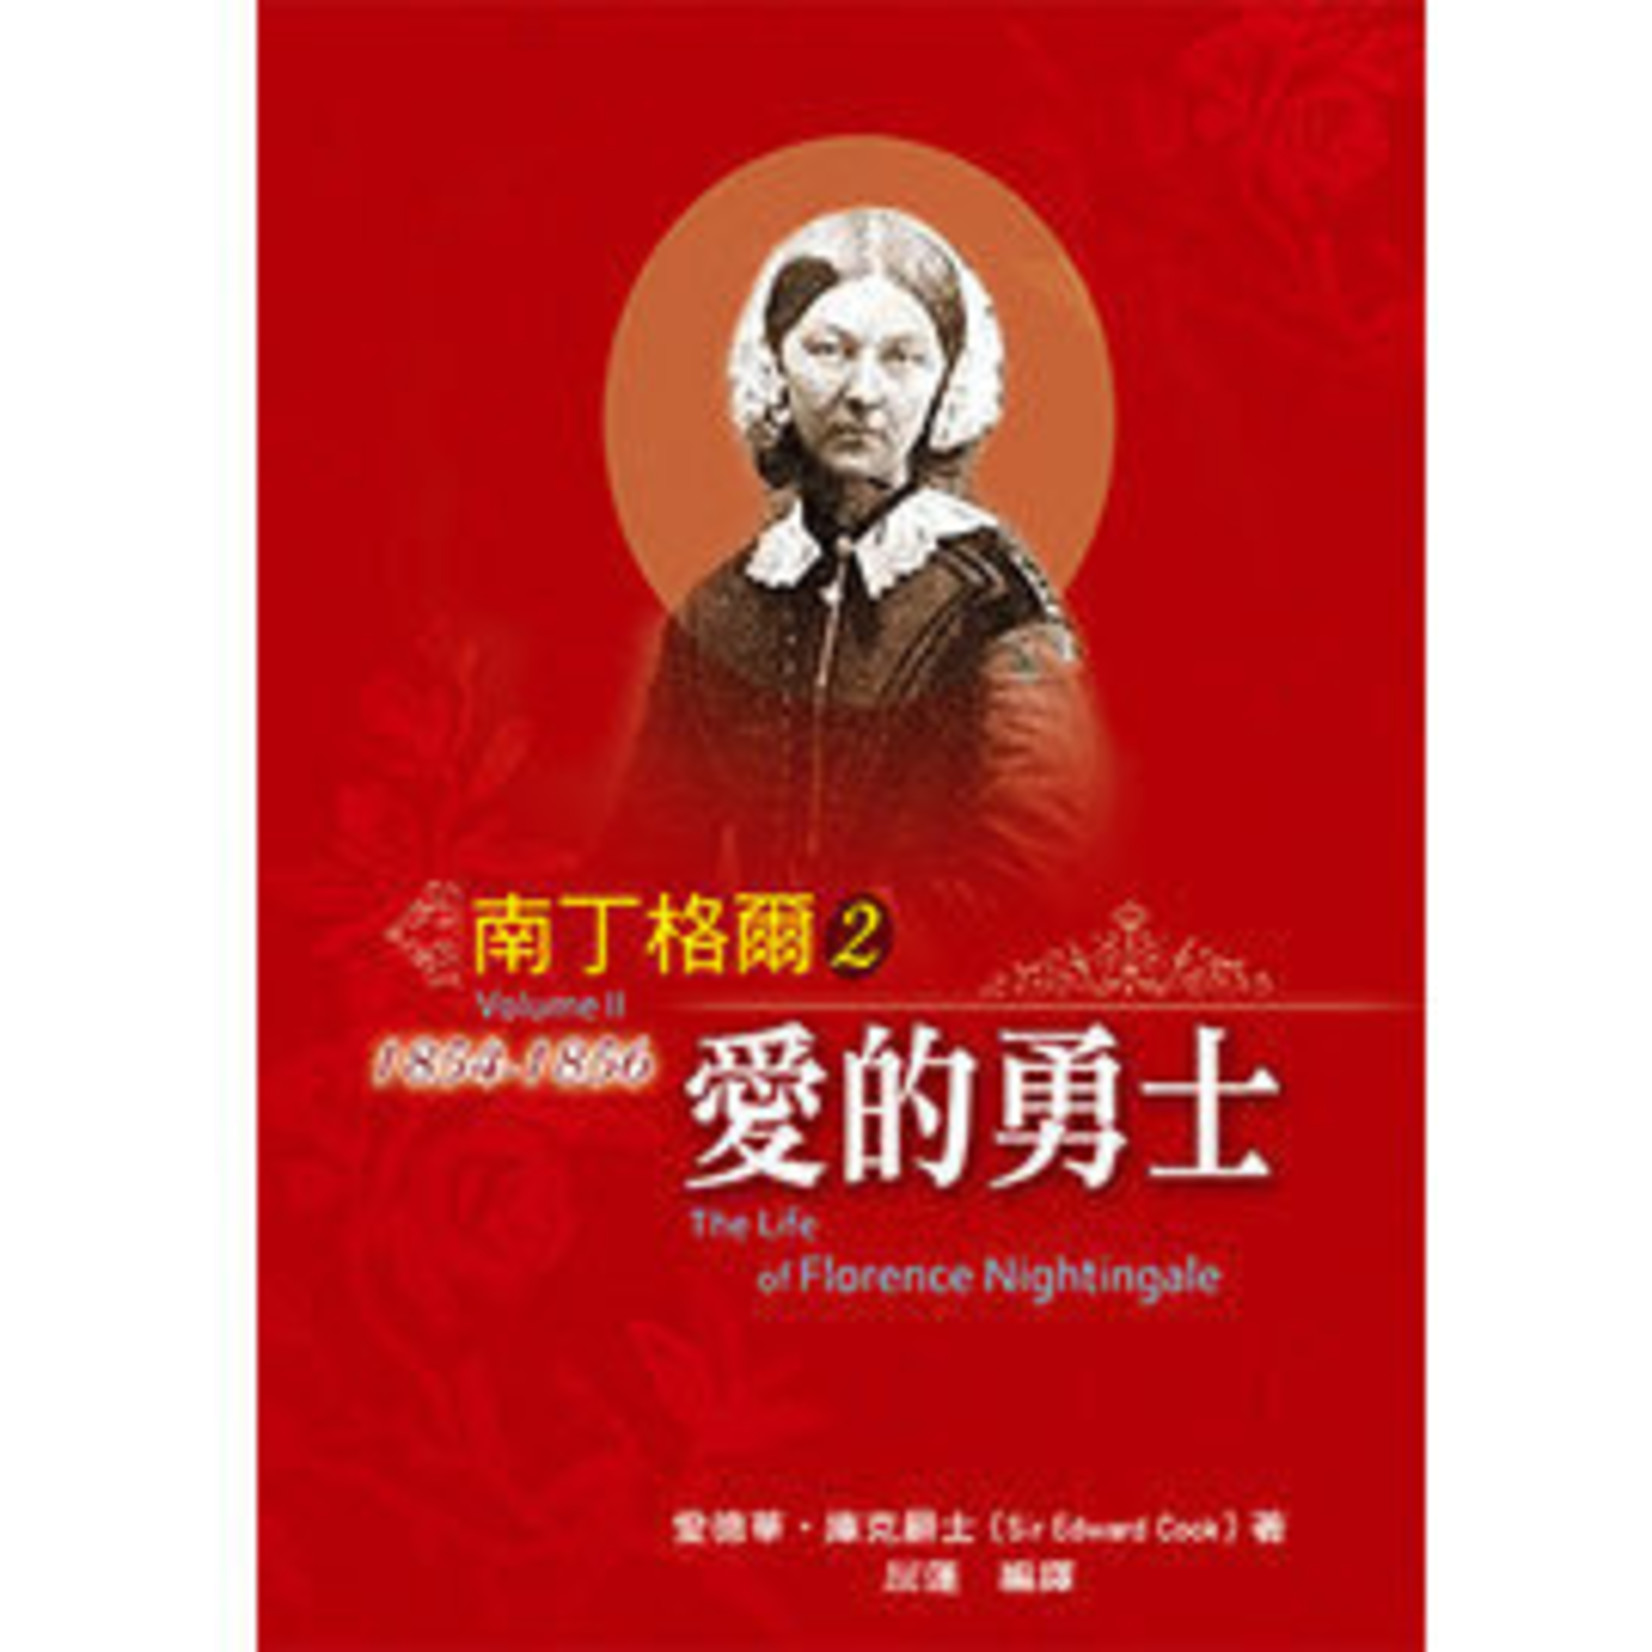 天恩 Grace Publishing House 南丁格爾2：愛的勇士 The Life of Florence Nightingale （ Volume II）